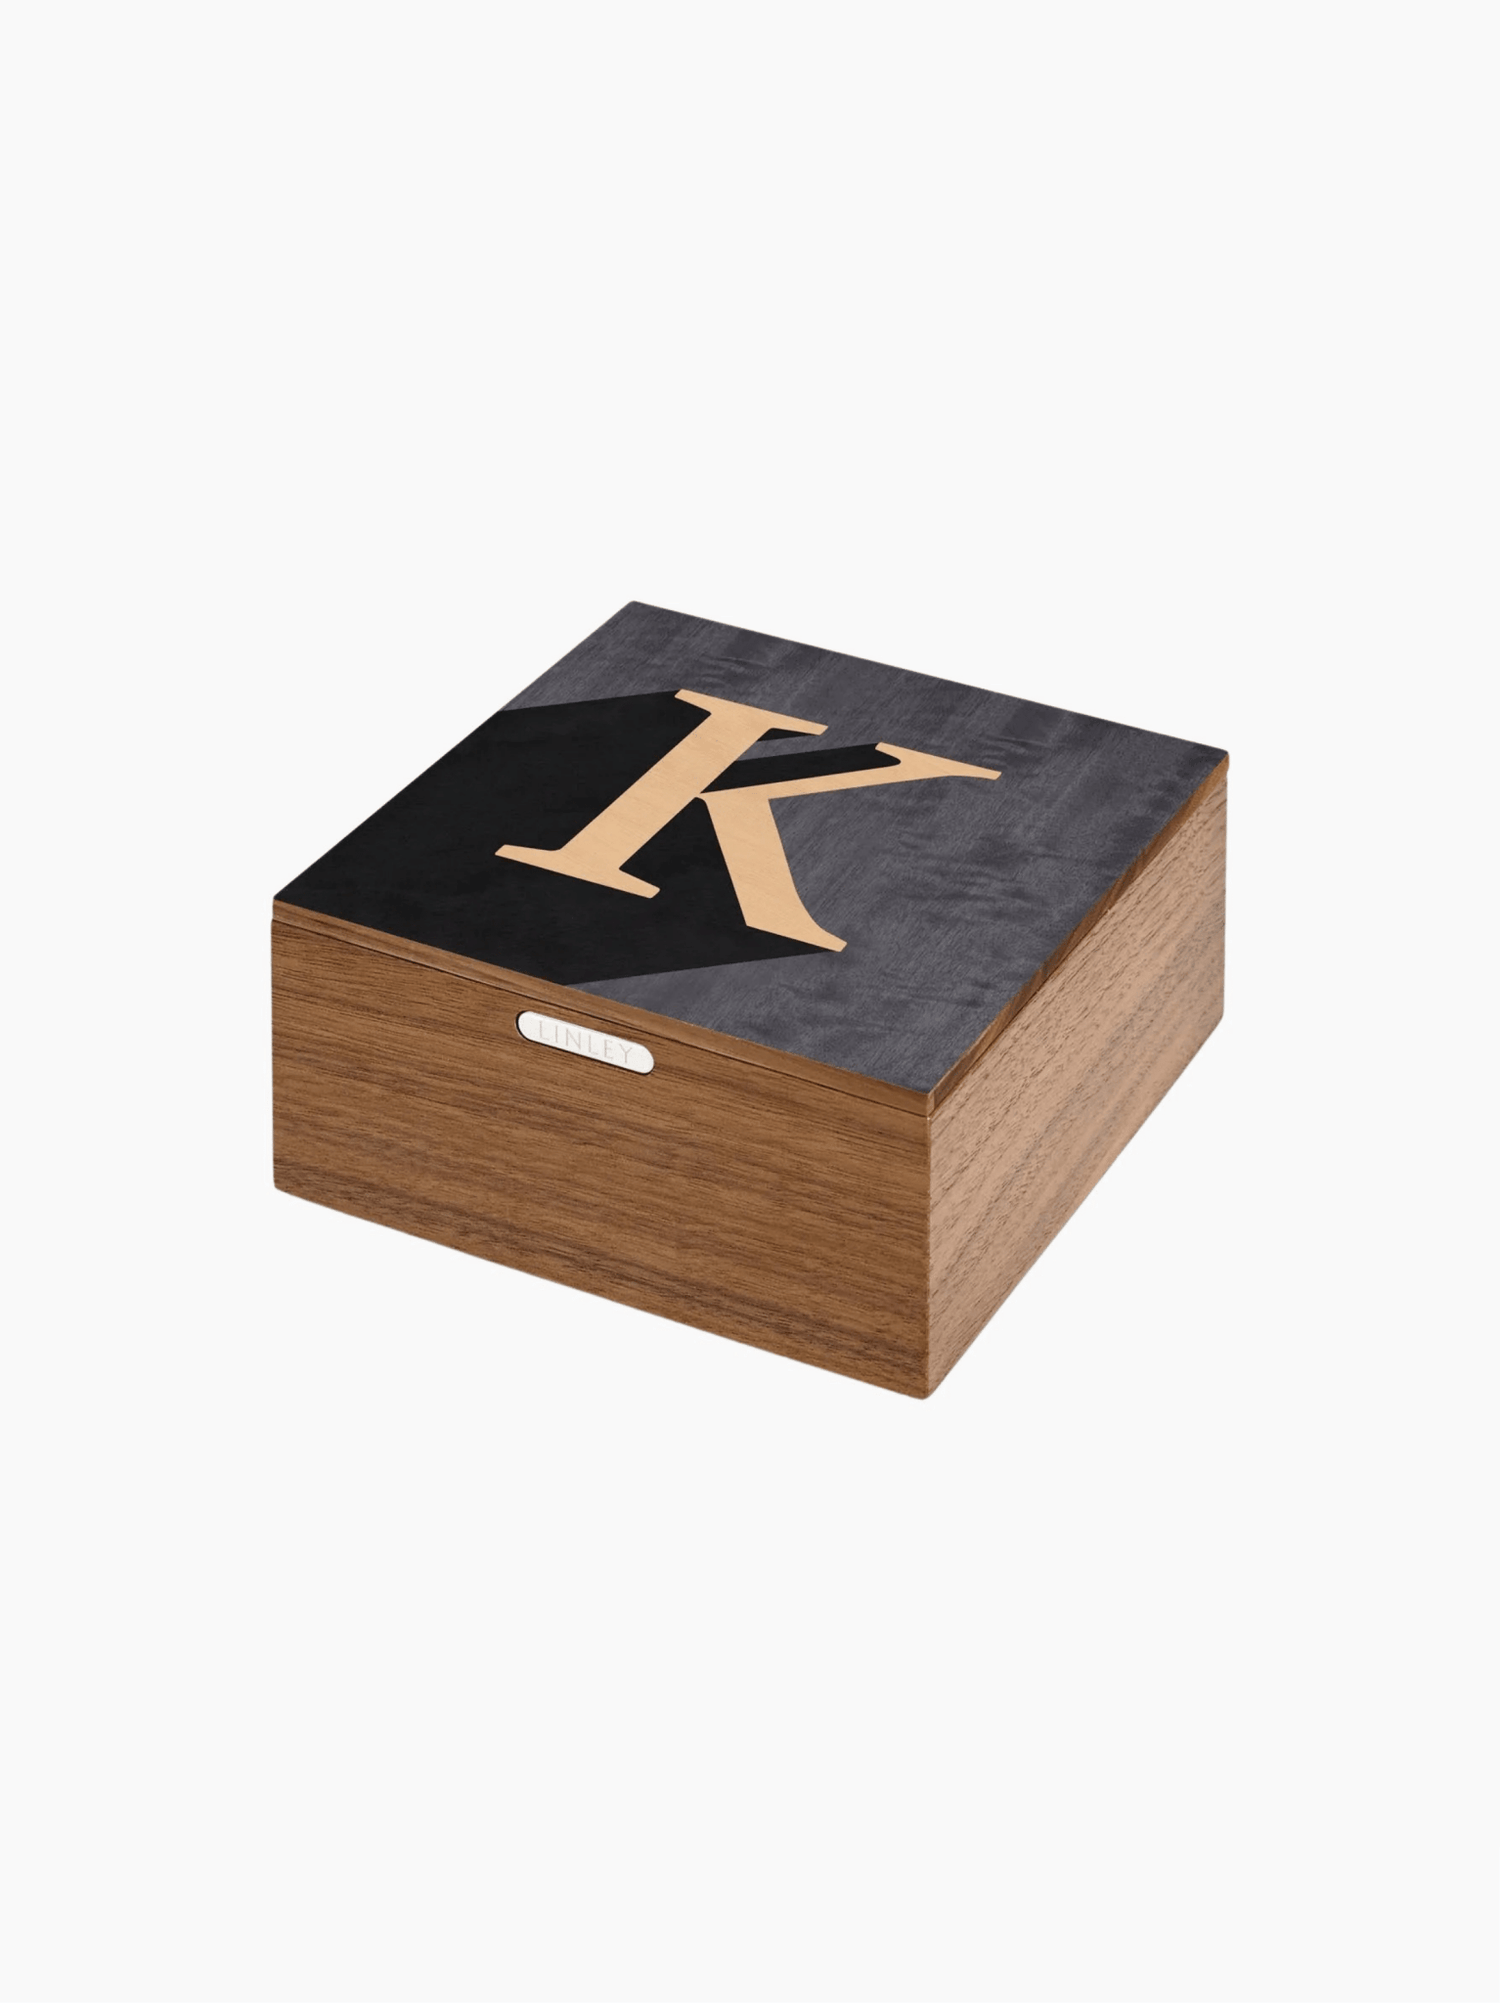 "K" Alphabet Box